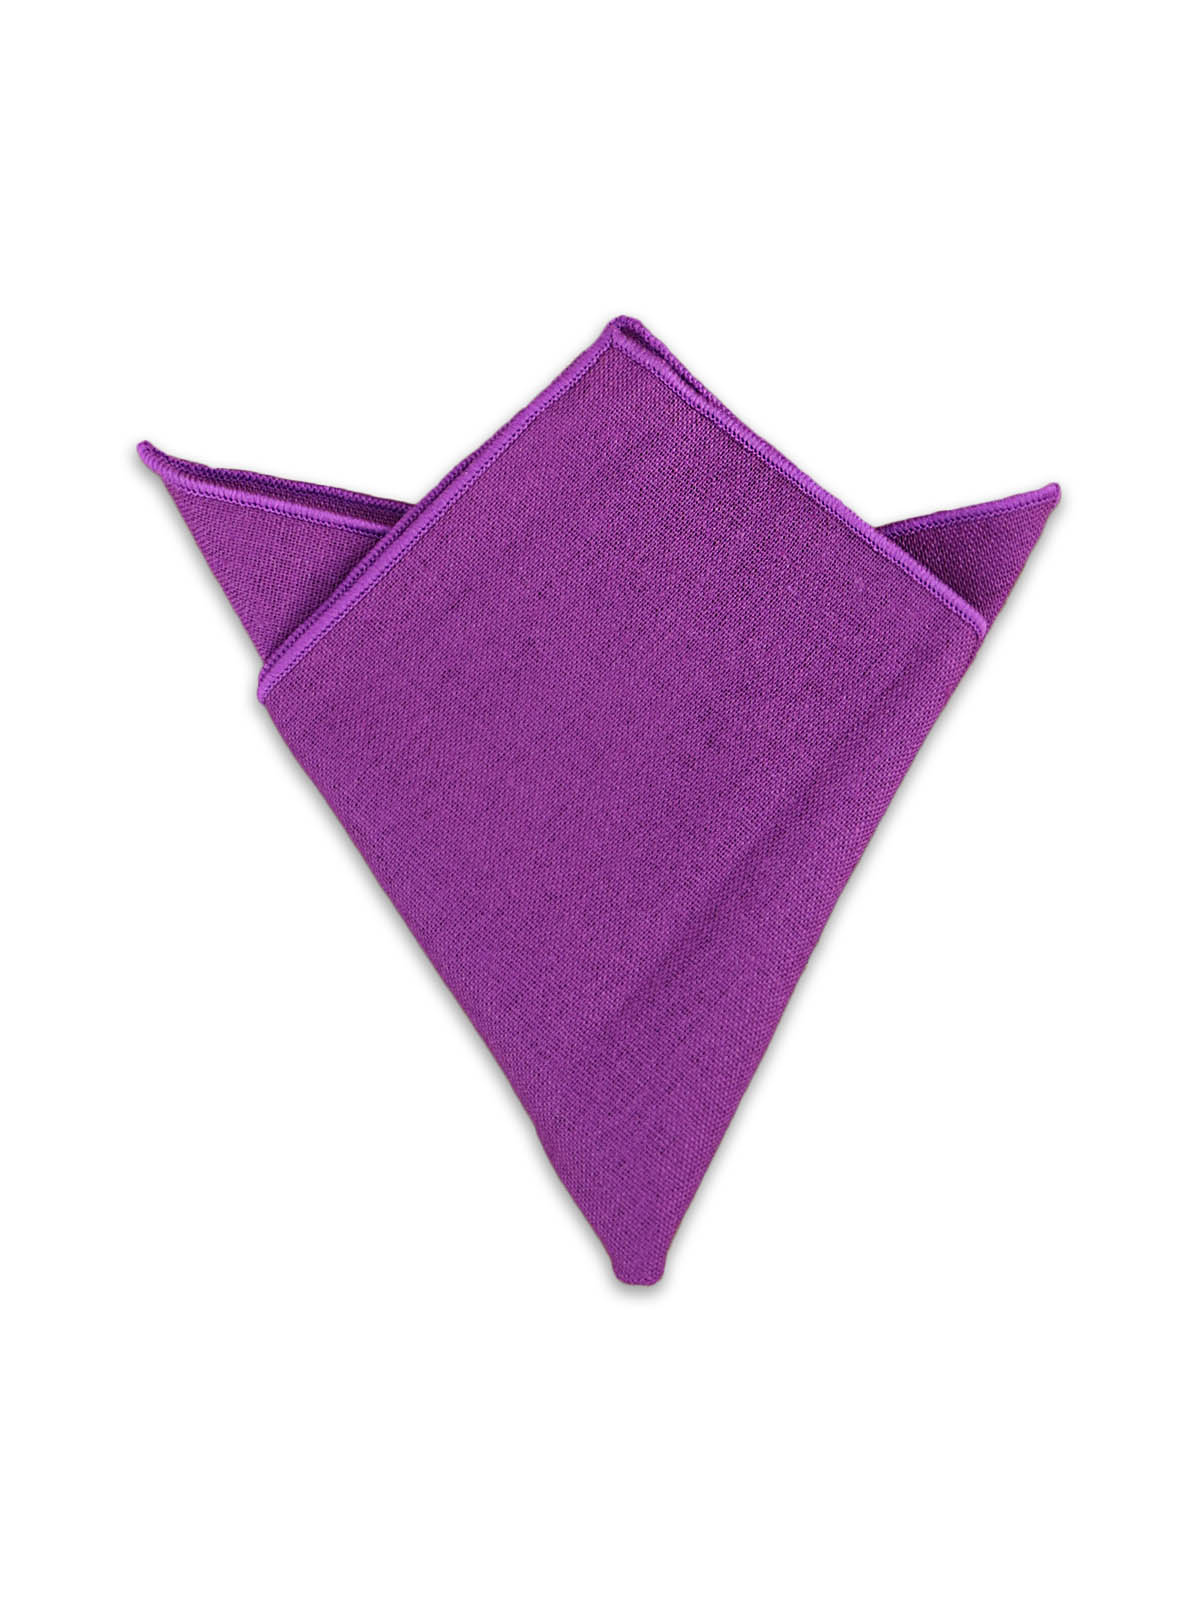 Платок в пиджак хлопковый пурпурный описание: Материал - Хлопок, Размеры - 24 см х 24 см, Страна производства - Турция;